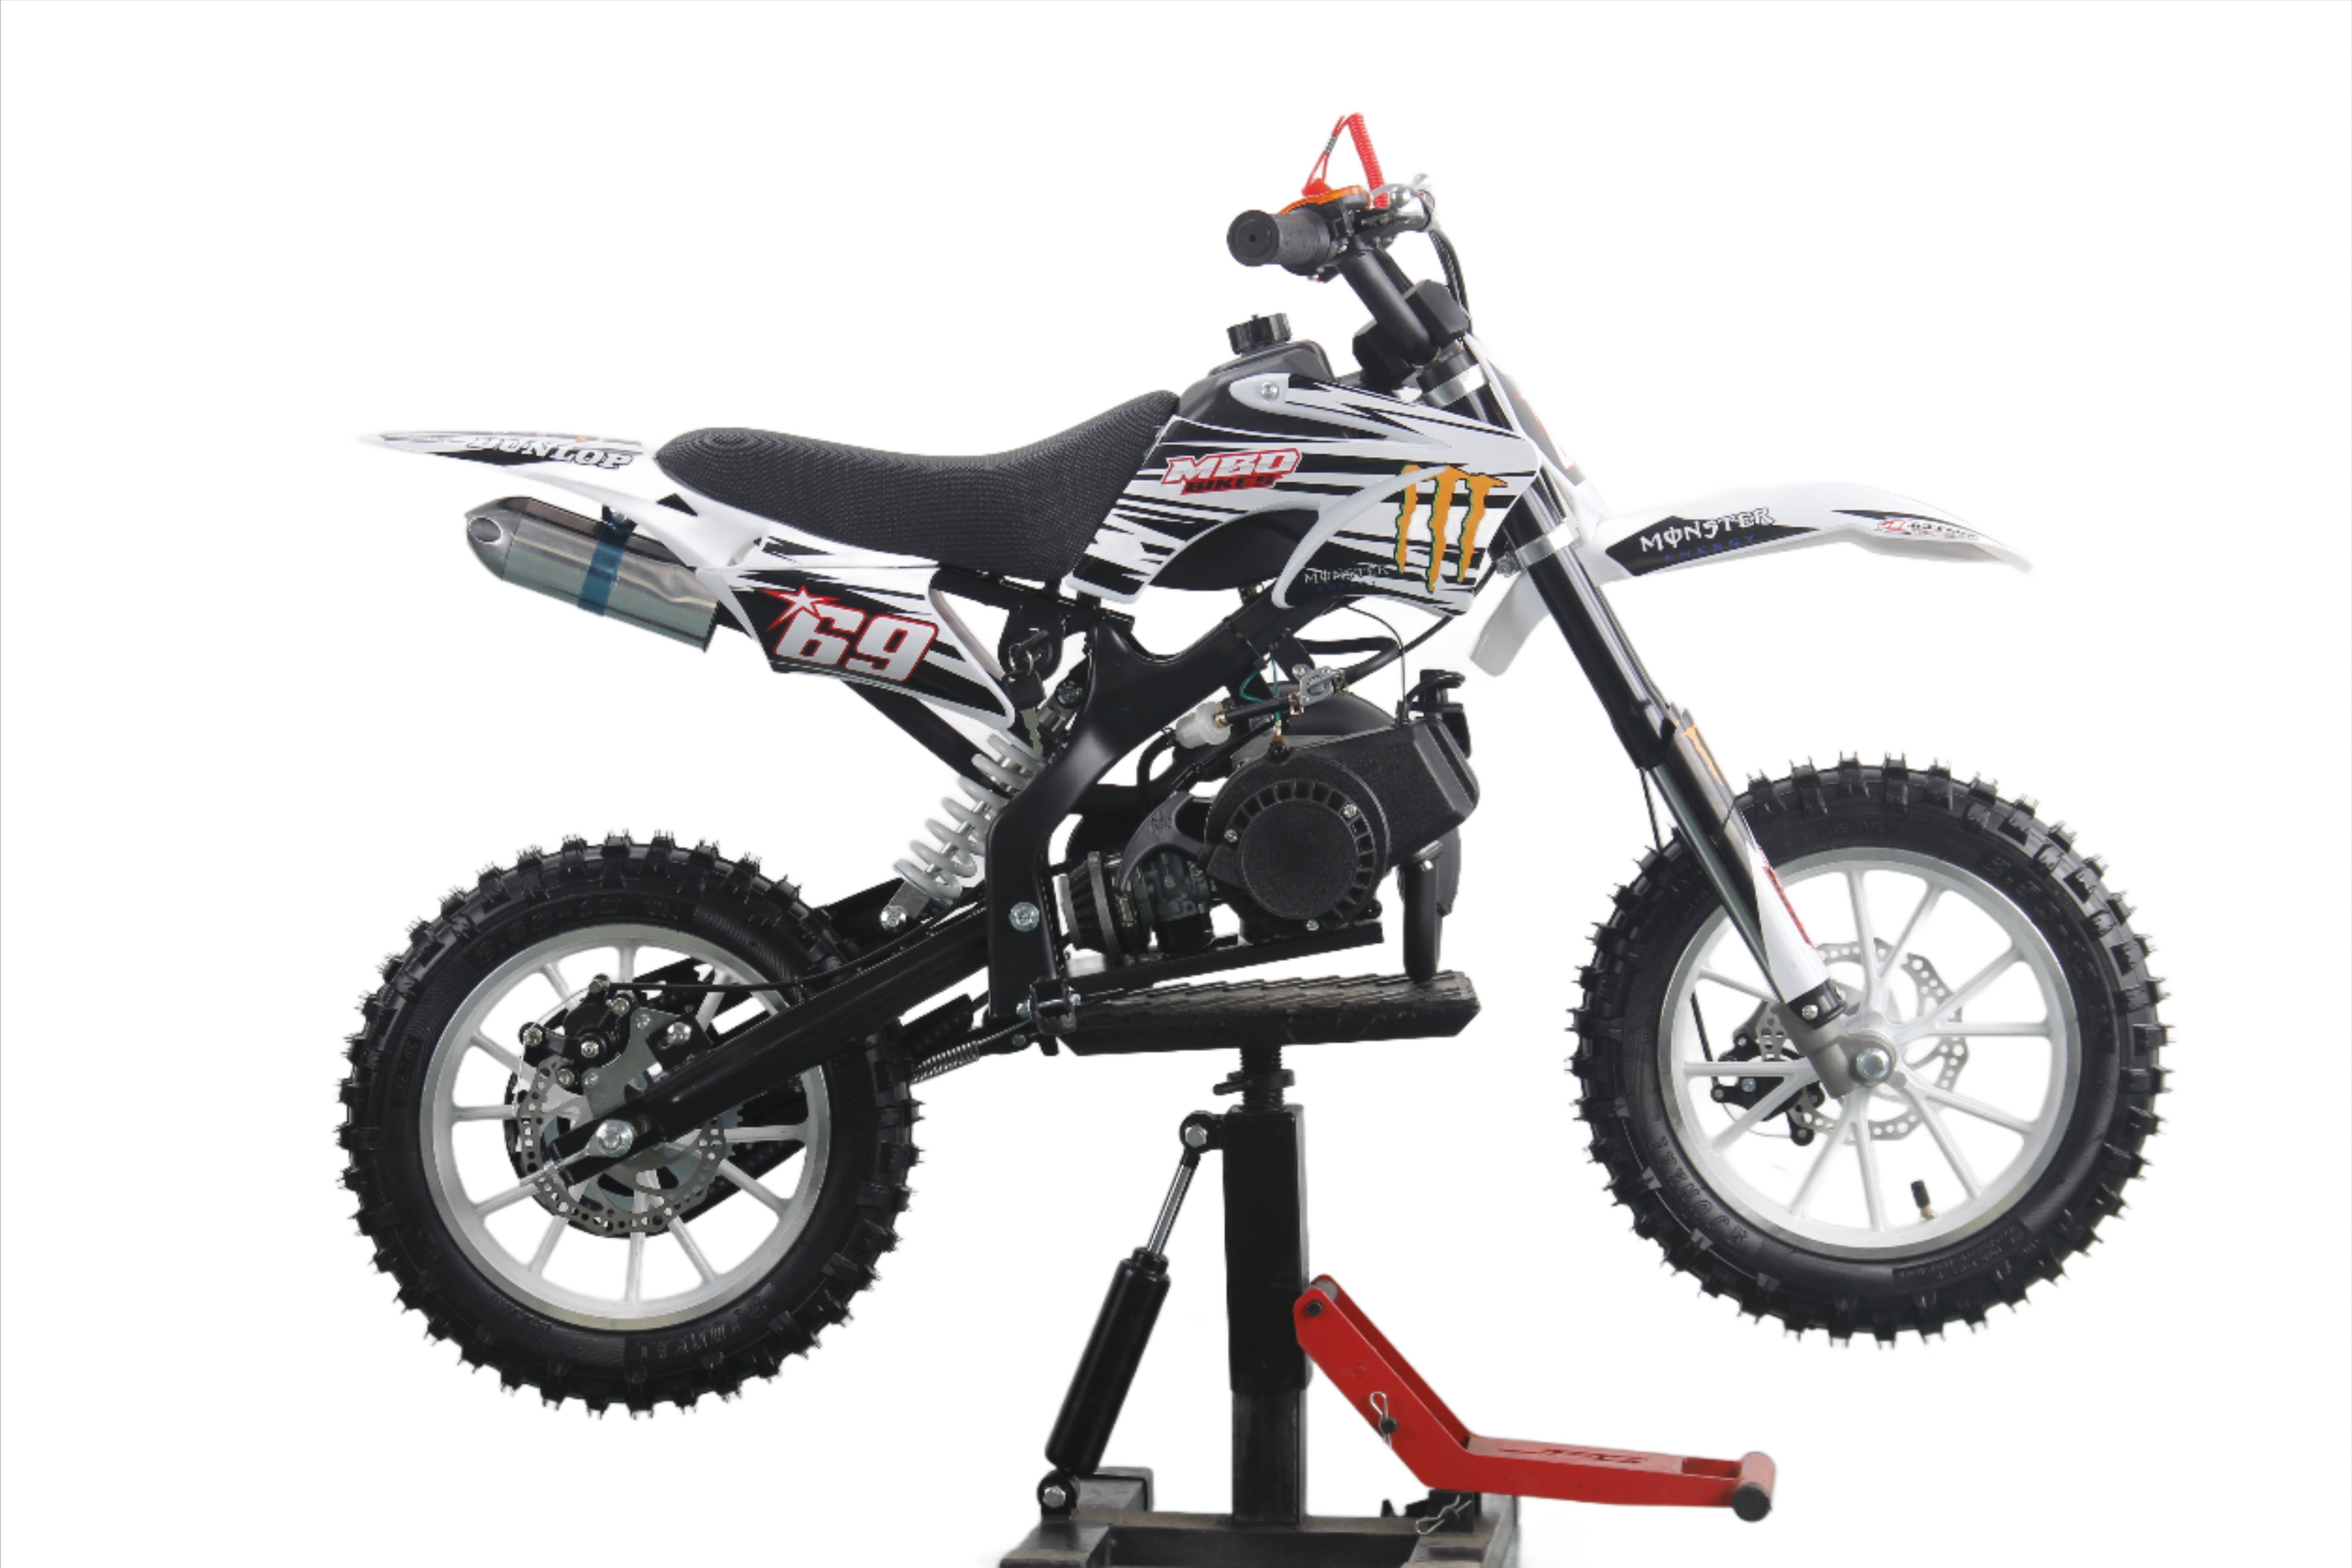 Motocross MX Gear Sets I Dirt Bike Gear - KW RaceWear